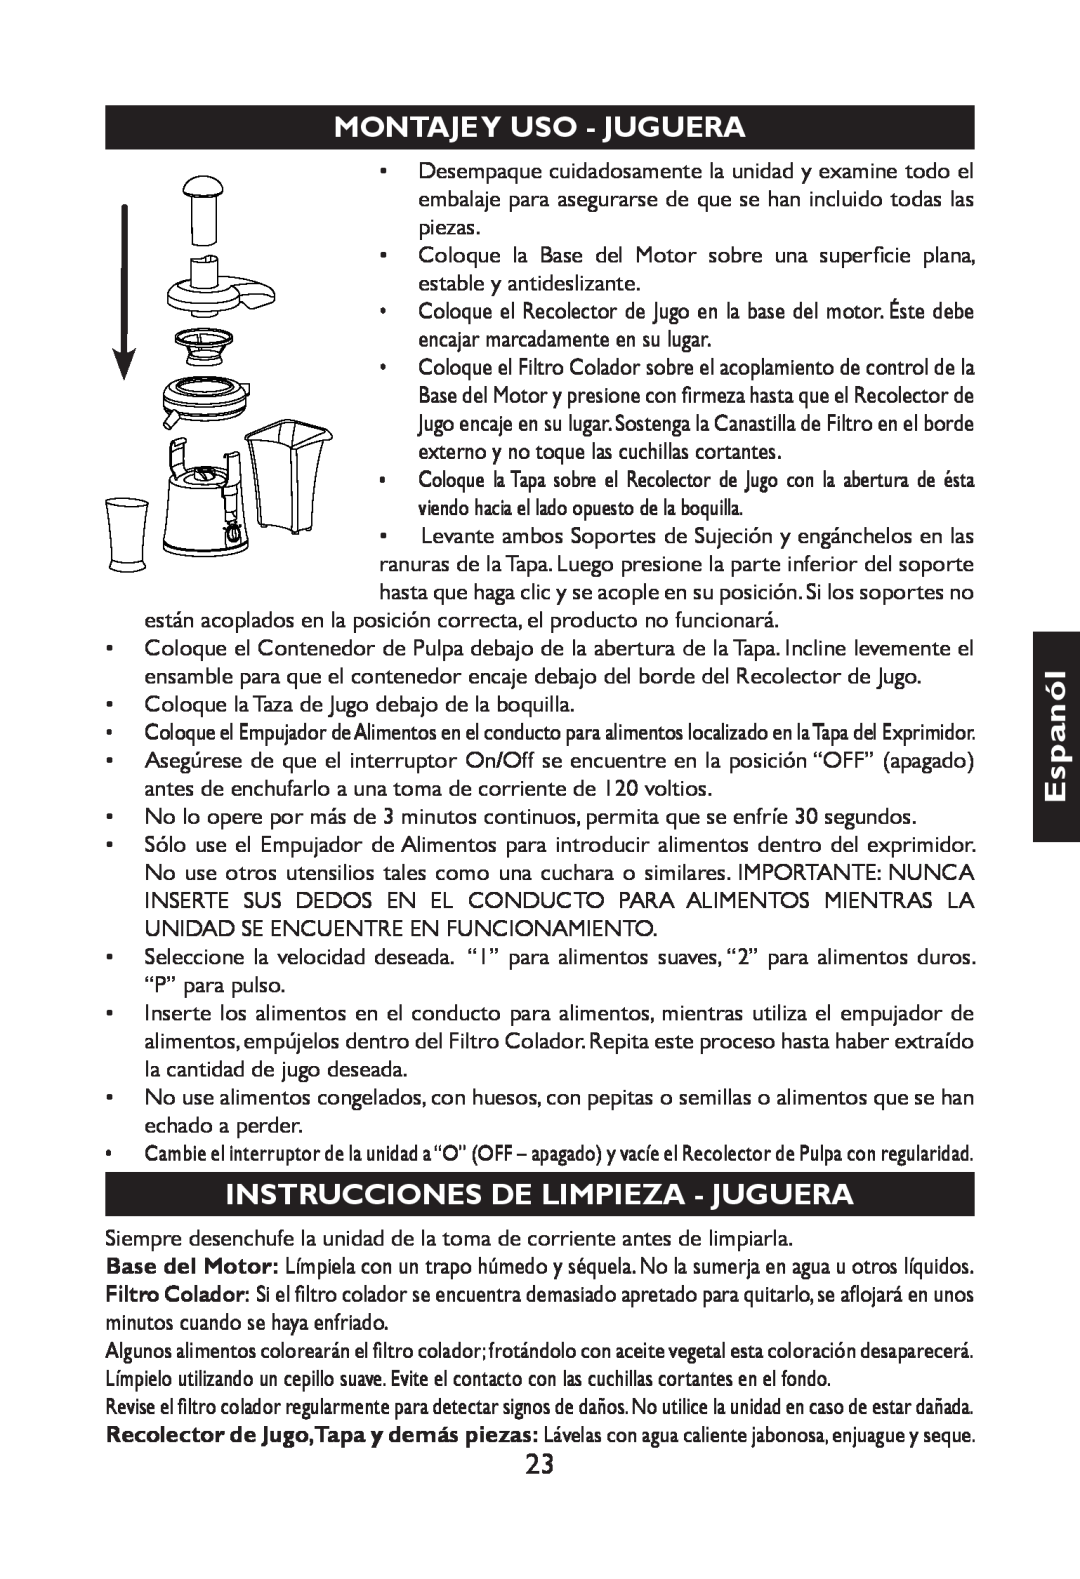 Nesco JB-50 manual Espanól, Montajey Uso - Juguera, Instrucciones Delimpieza - Juguera 